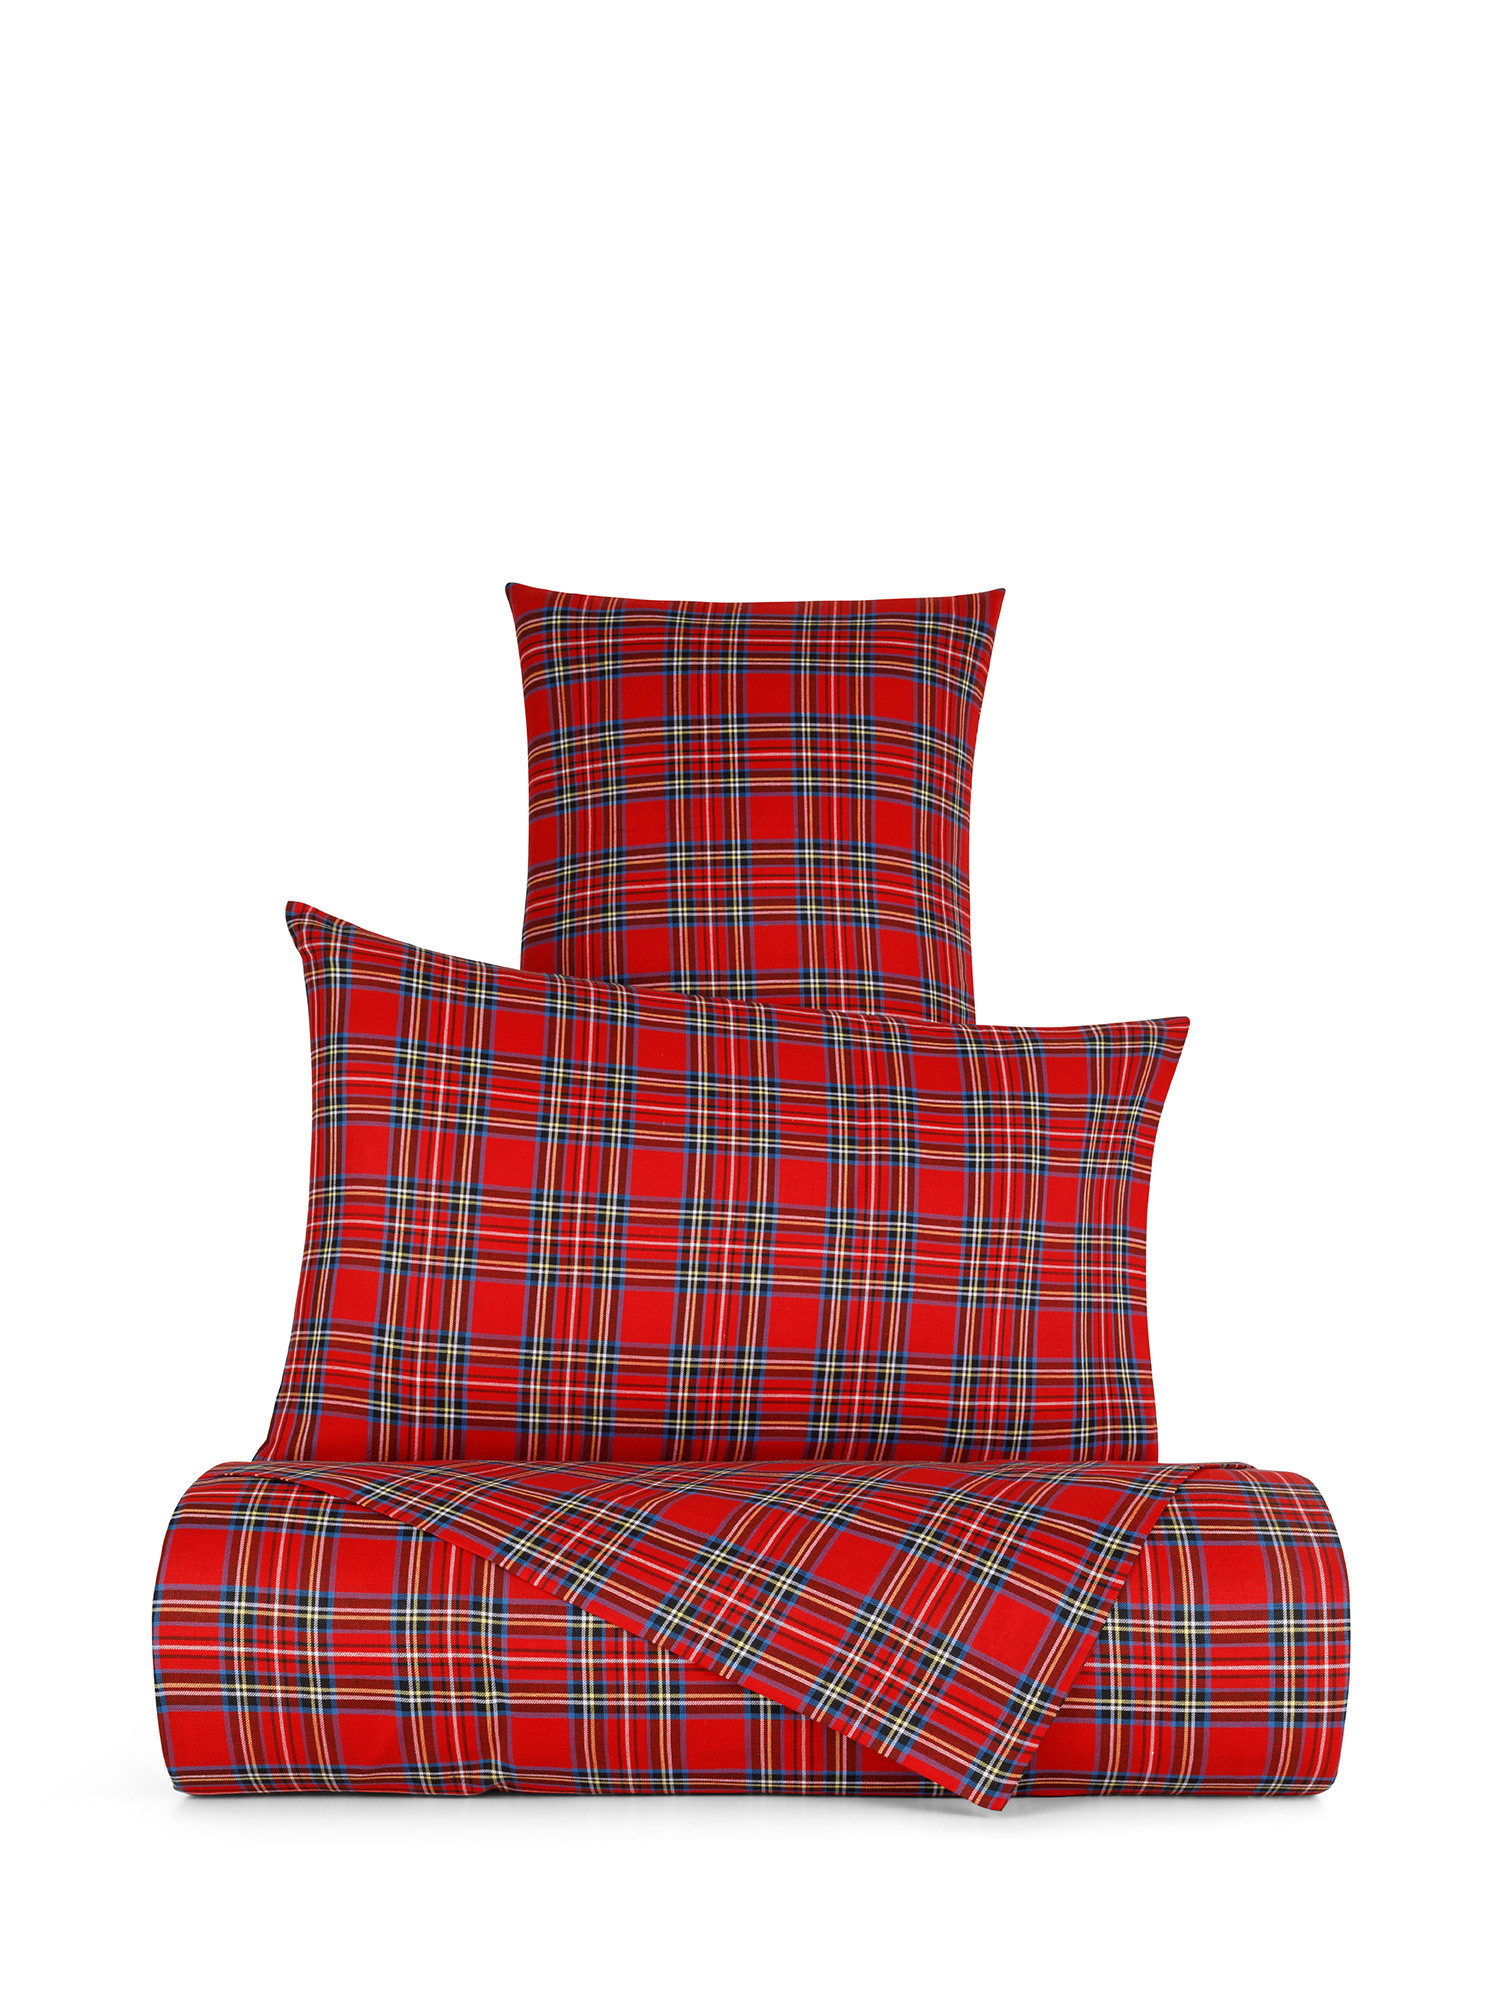 Warm tartan cotton pillowcase, Red, large image number 1